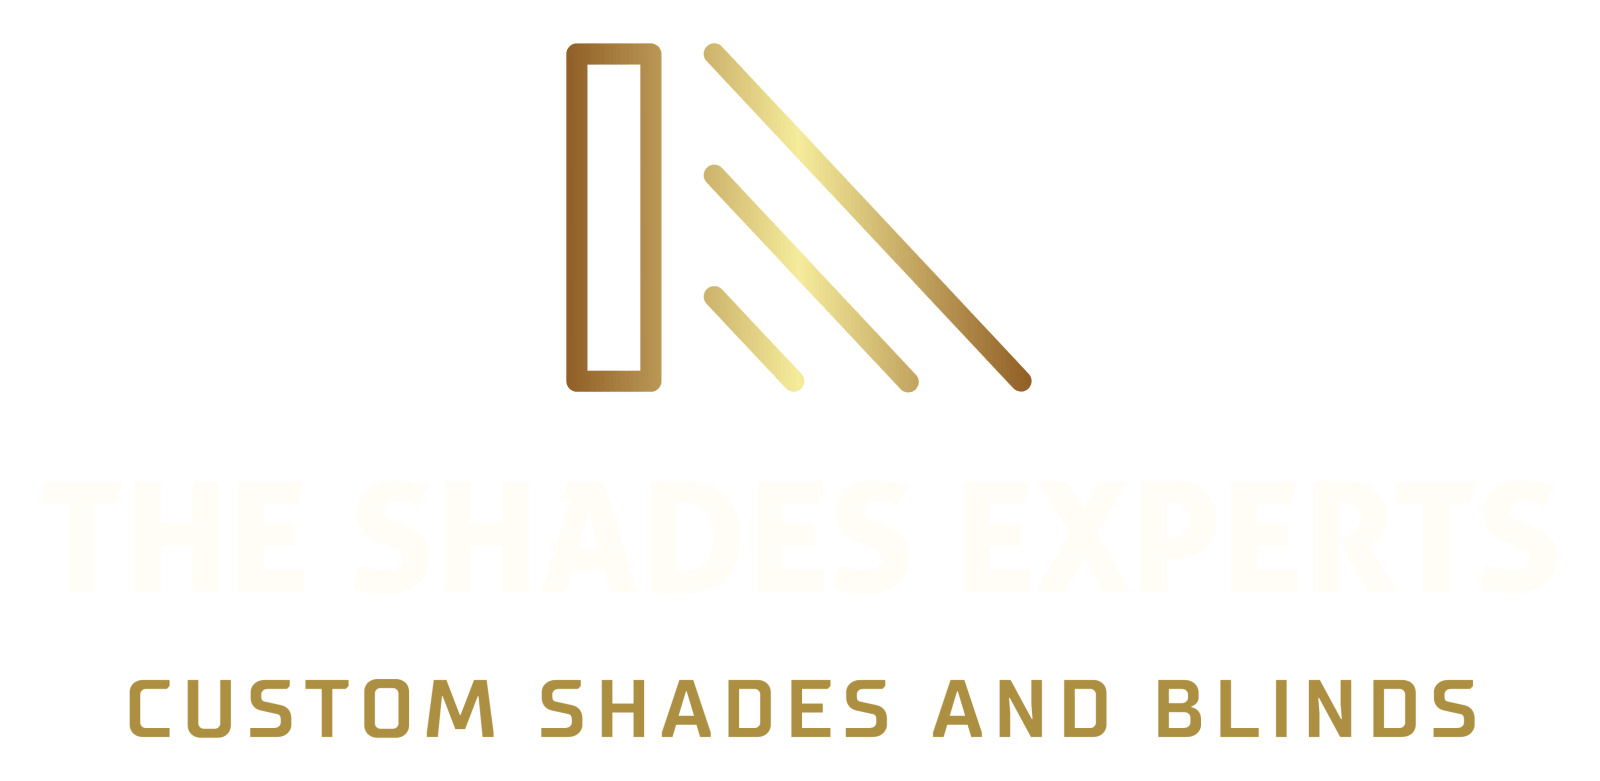 shade experts logo